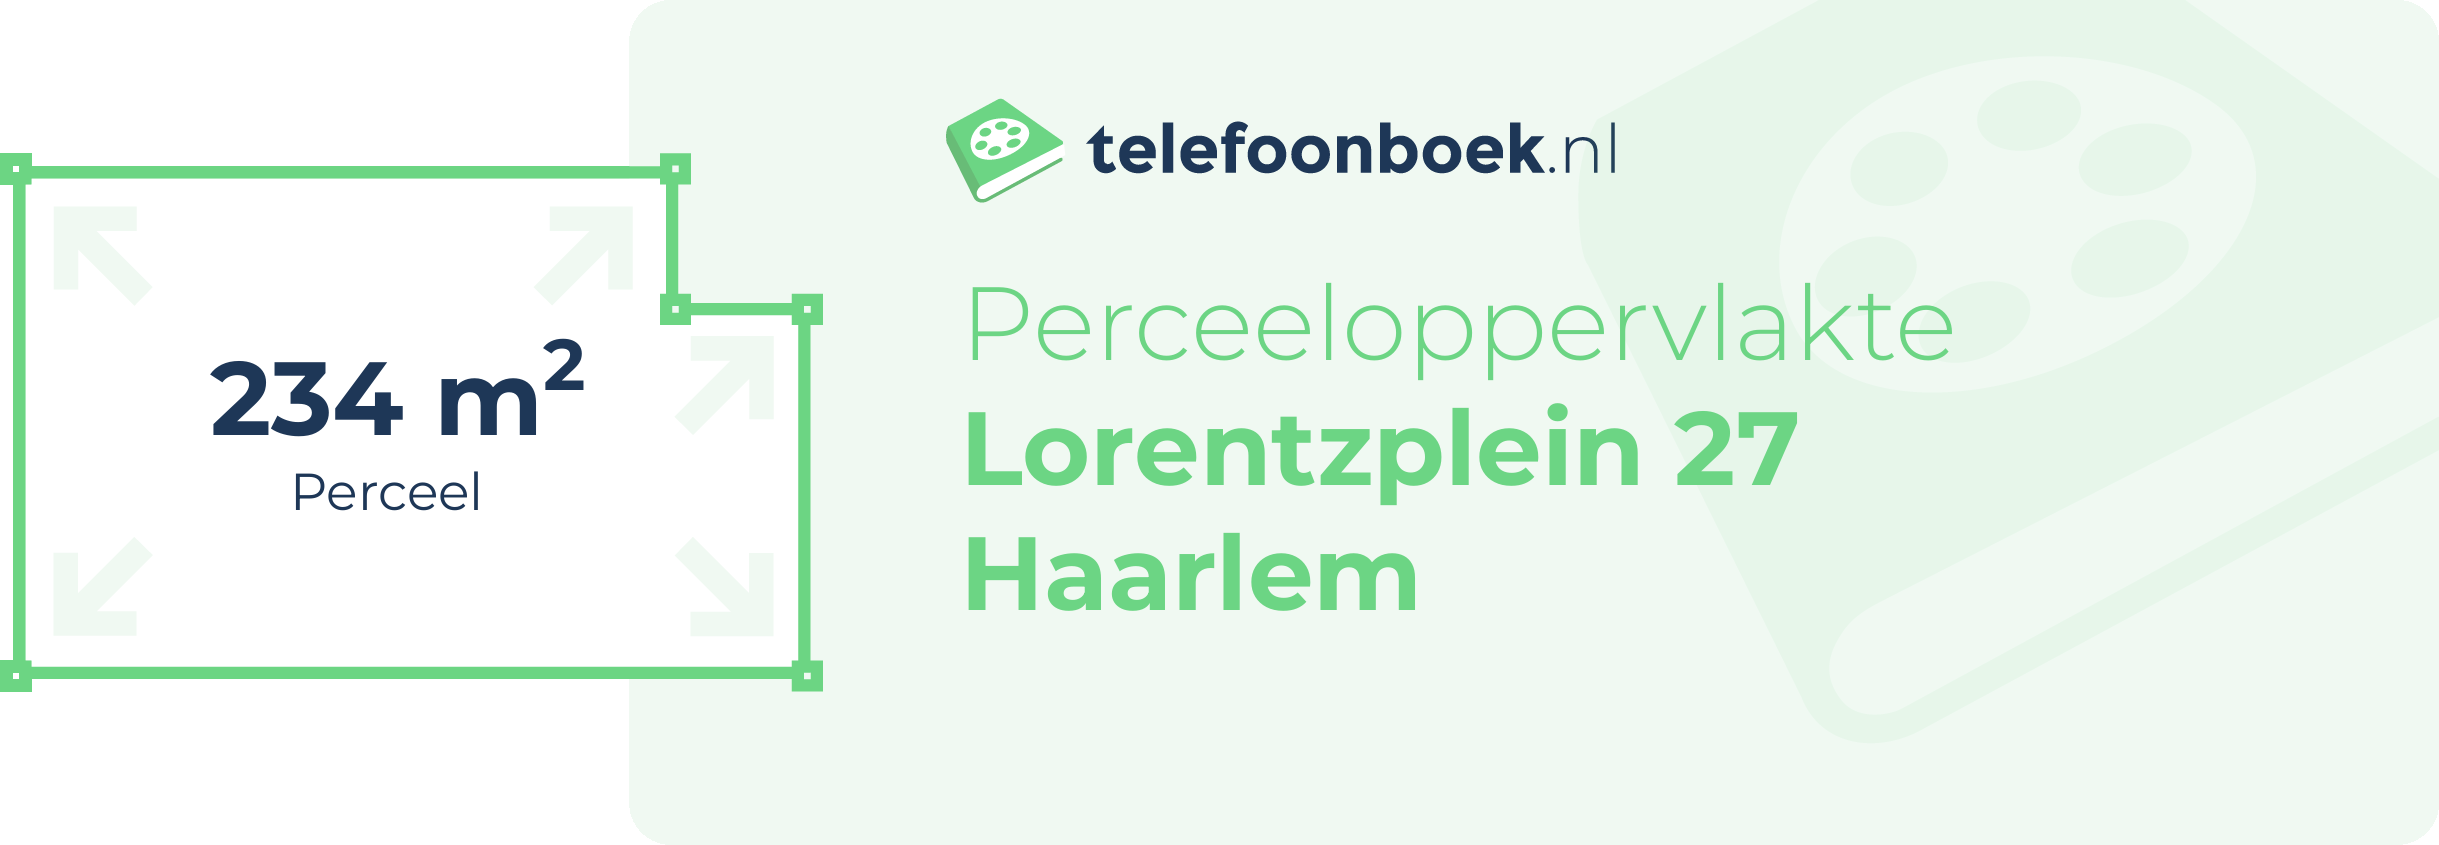 Perceeloppervlakte Lorentzplein 27 Haarlem